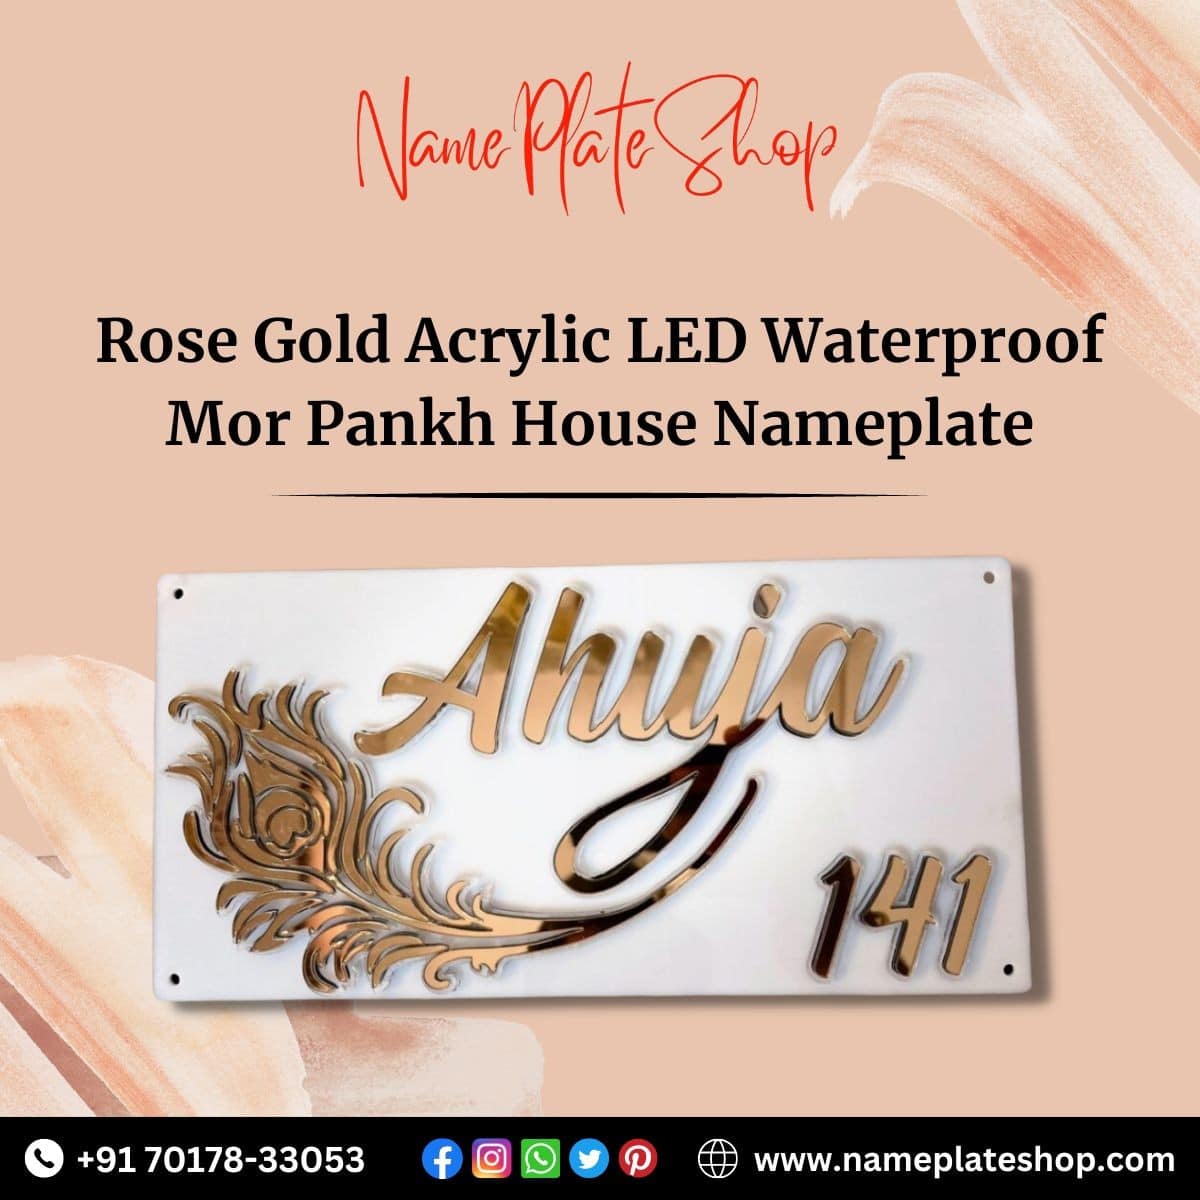 Acrylic LED Mor Pankh House Nameplate Rose Gold NamePlateShop